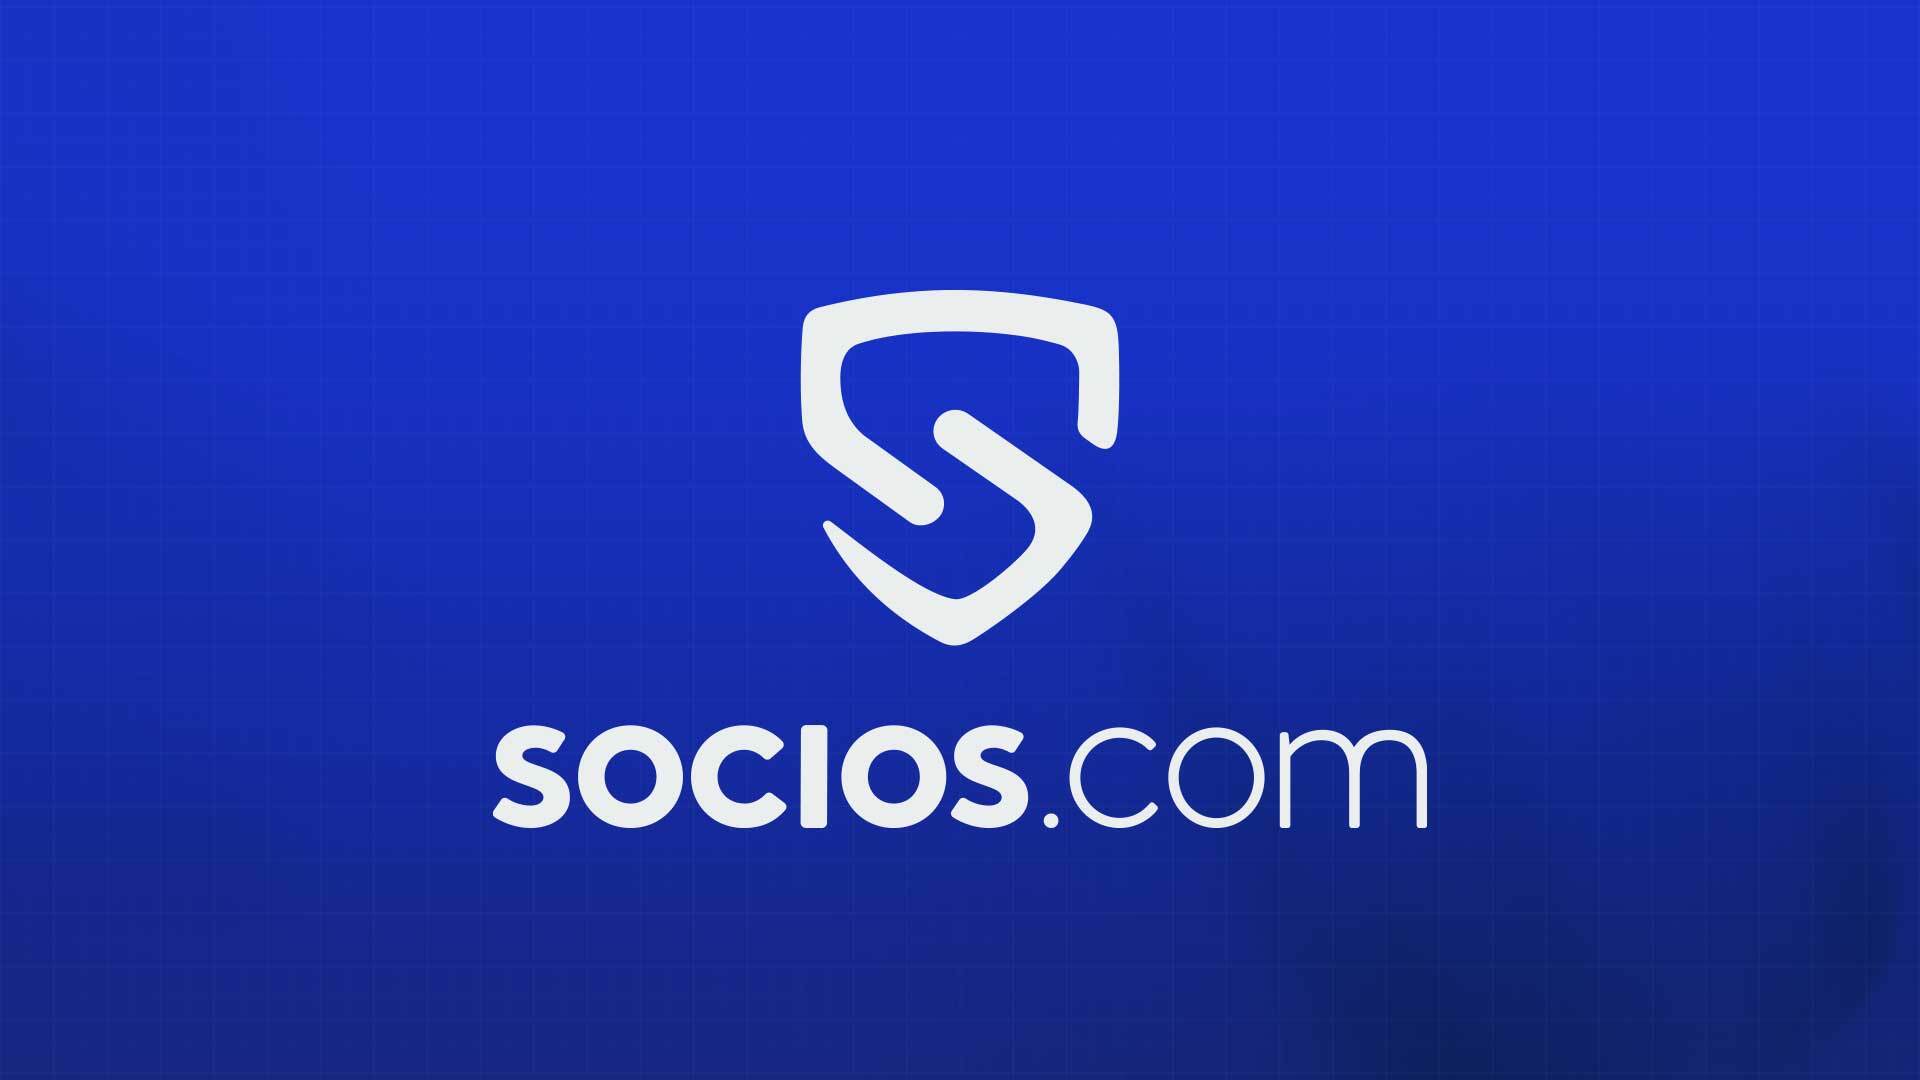 Hur Socios.com ökar fansengagemanget med avancerade funktioner